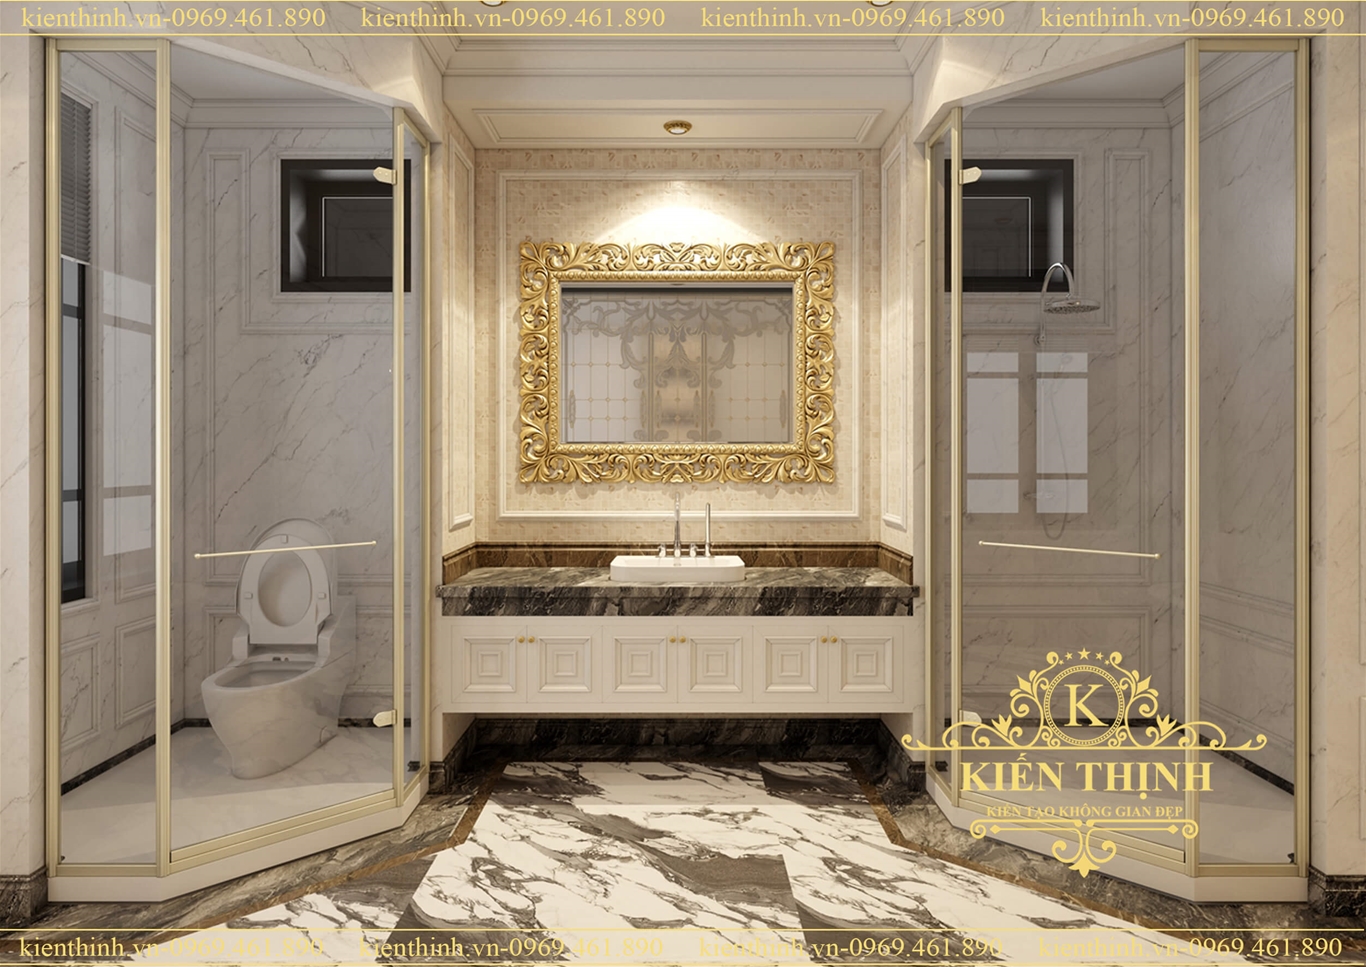  Thiết kế nội thất phòng tắm phong cách tân cổ điển  luxury bathroom interior